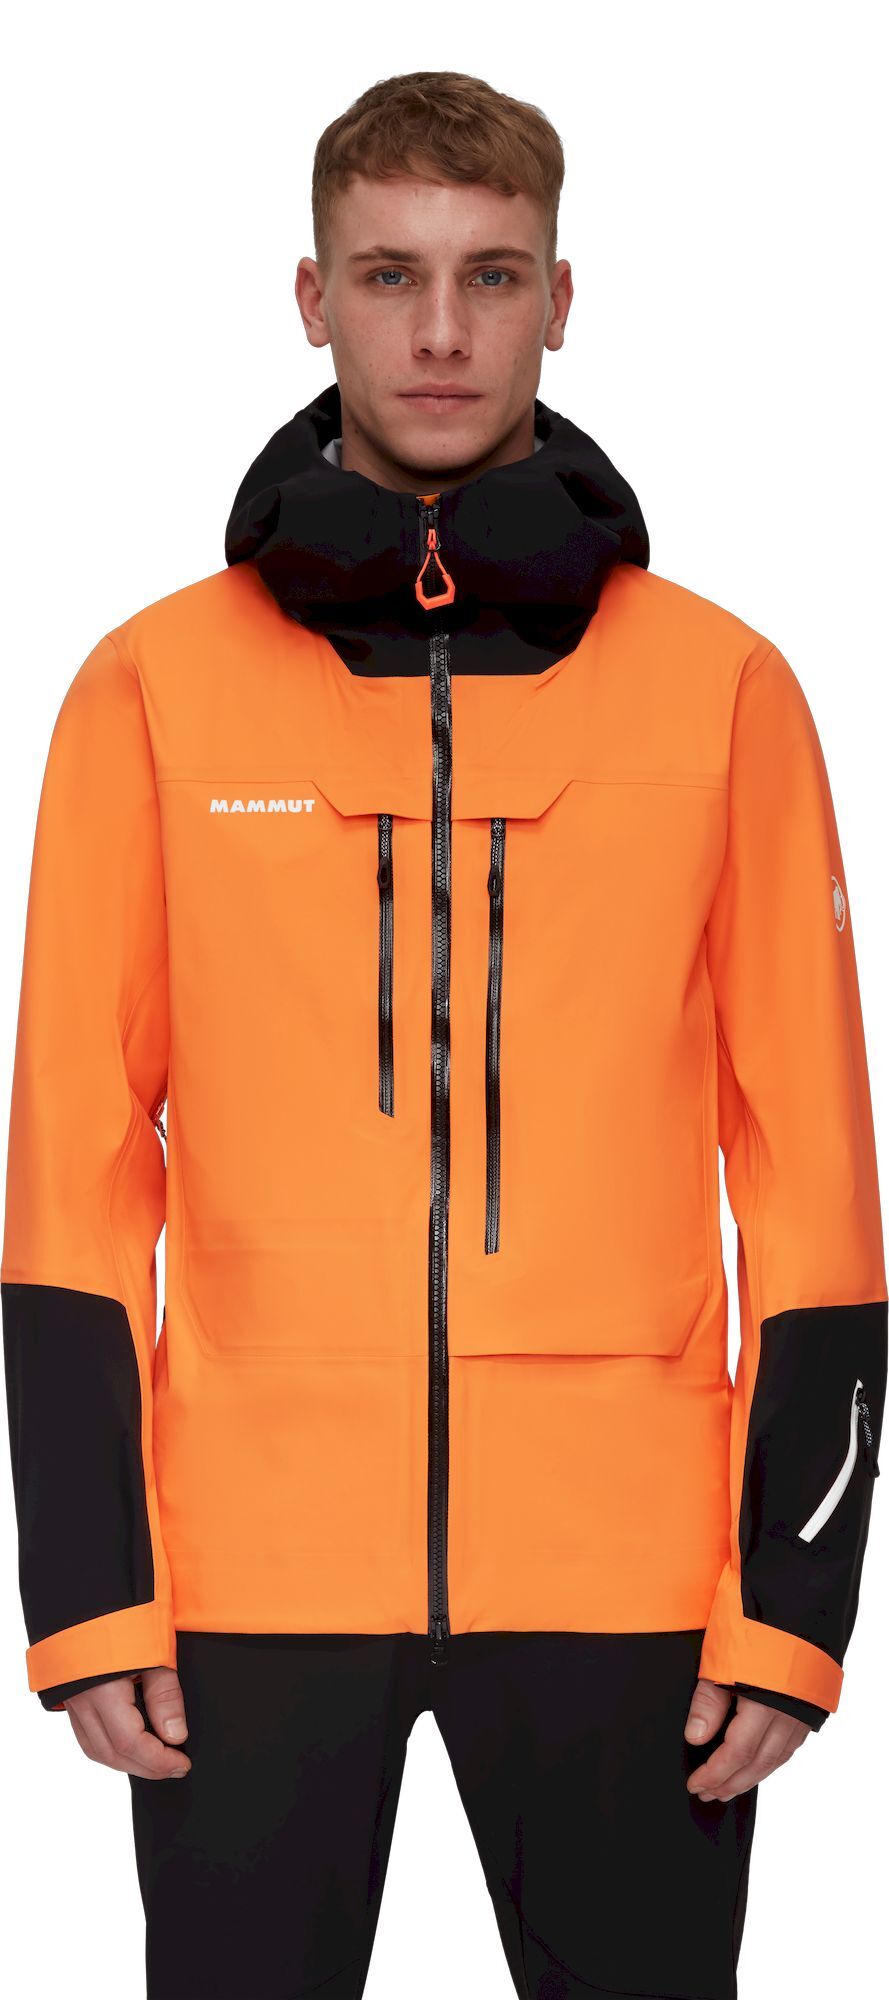 Veste - Ski - Veste TELLURIDE homme - orange